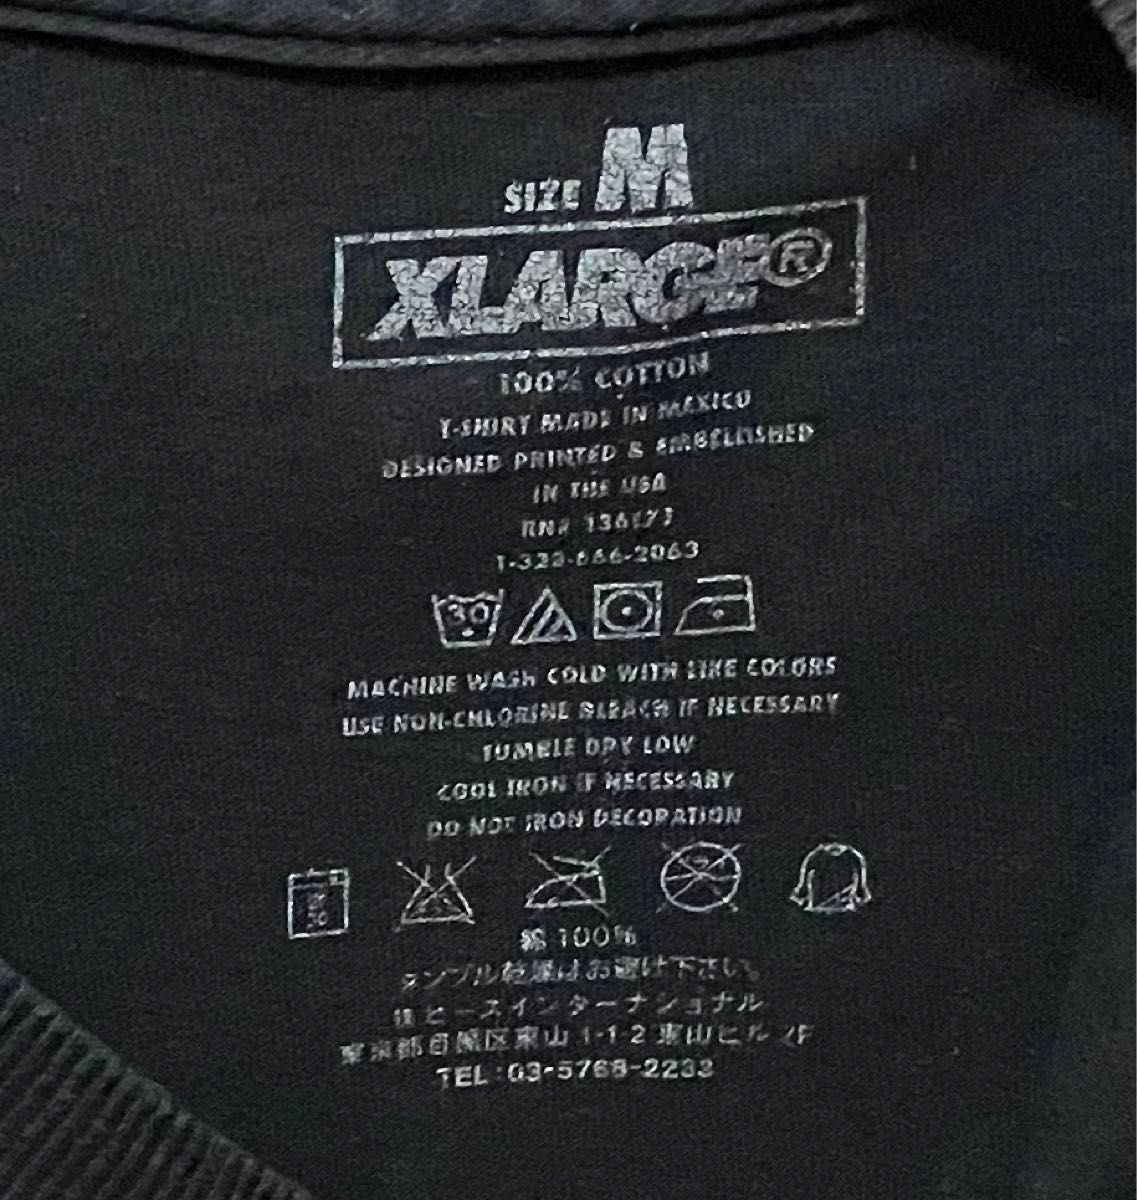 X-LARGE エクストララージ ビッグブランドロゴ　Tシャツ　染み込みプリント　丸胴ボディ　メキシコ製　ペンキ飛散あり